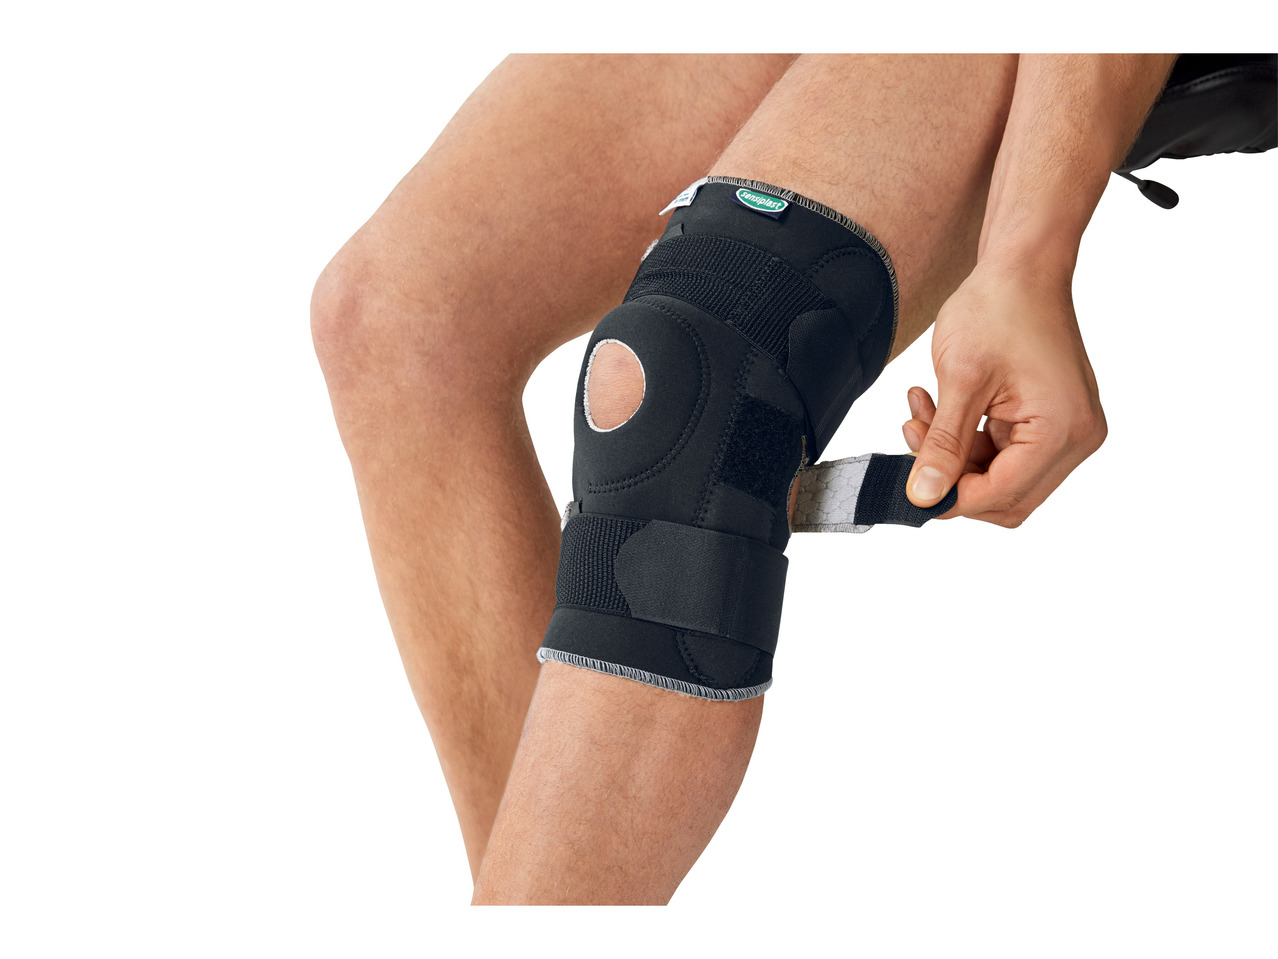 SENSIPLAST Pro Comfort Knee Brace